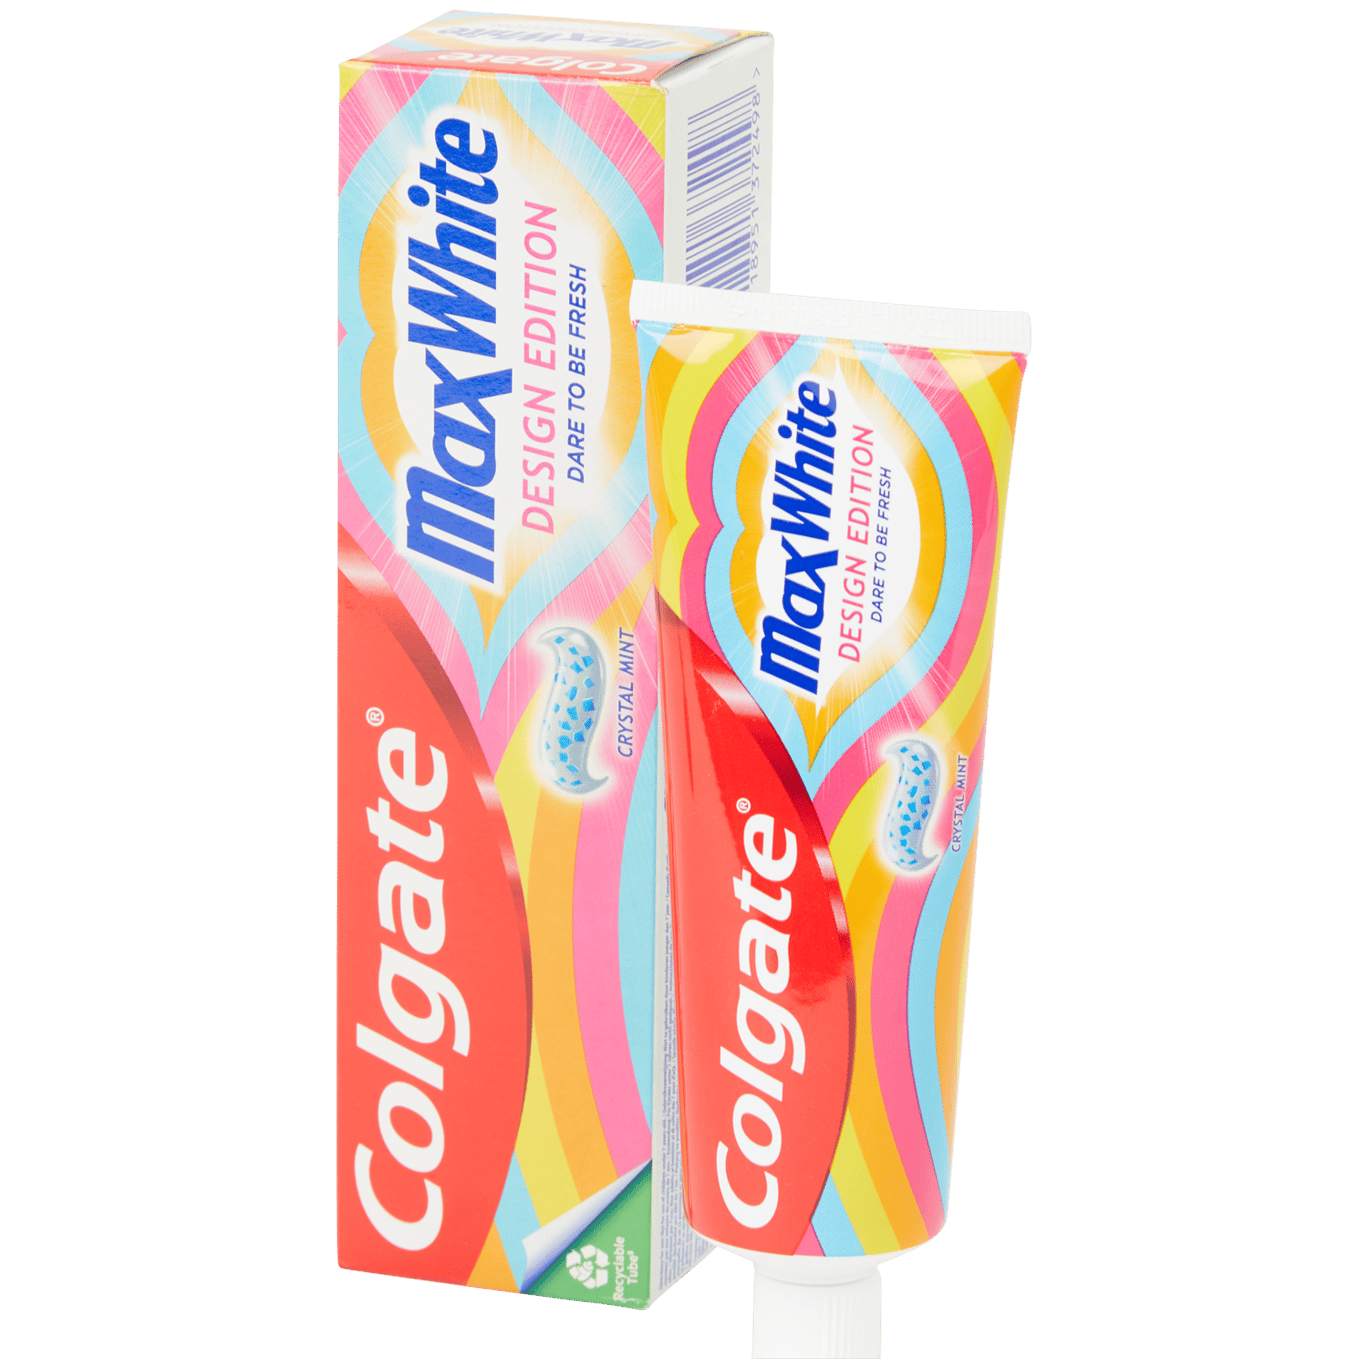 Pasta de dentes Colgate MaxWhite Edição limitada